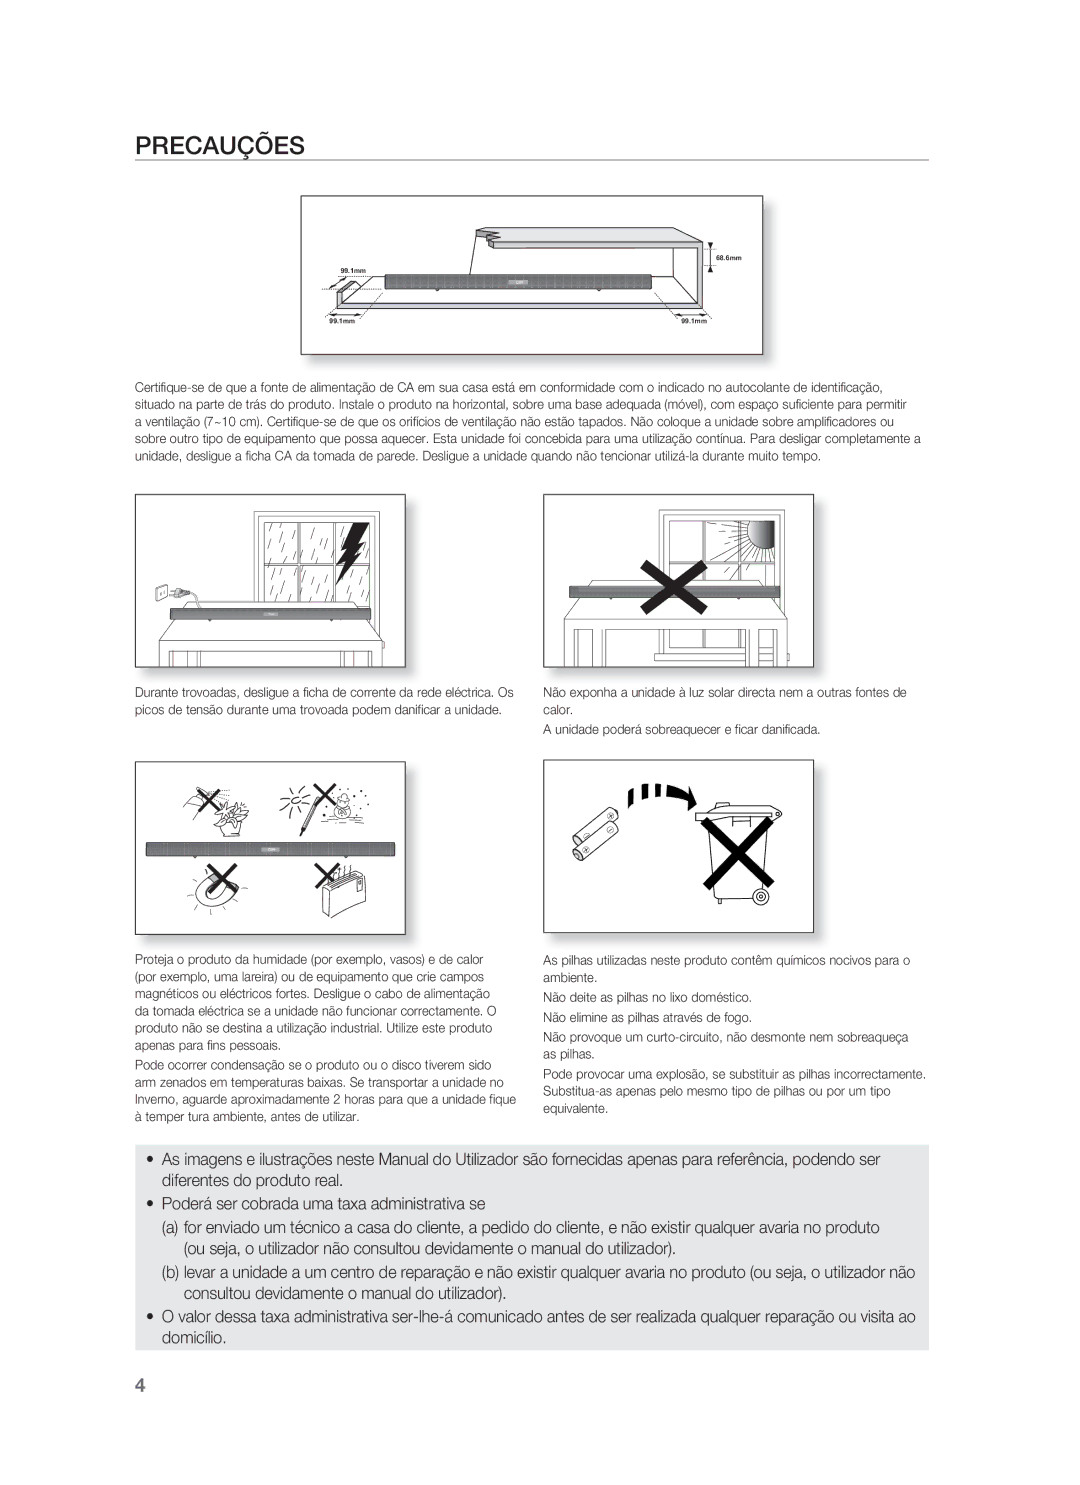 Samsung HW-F850/ZF manual Precauções 